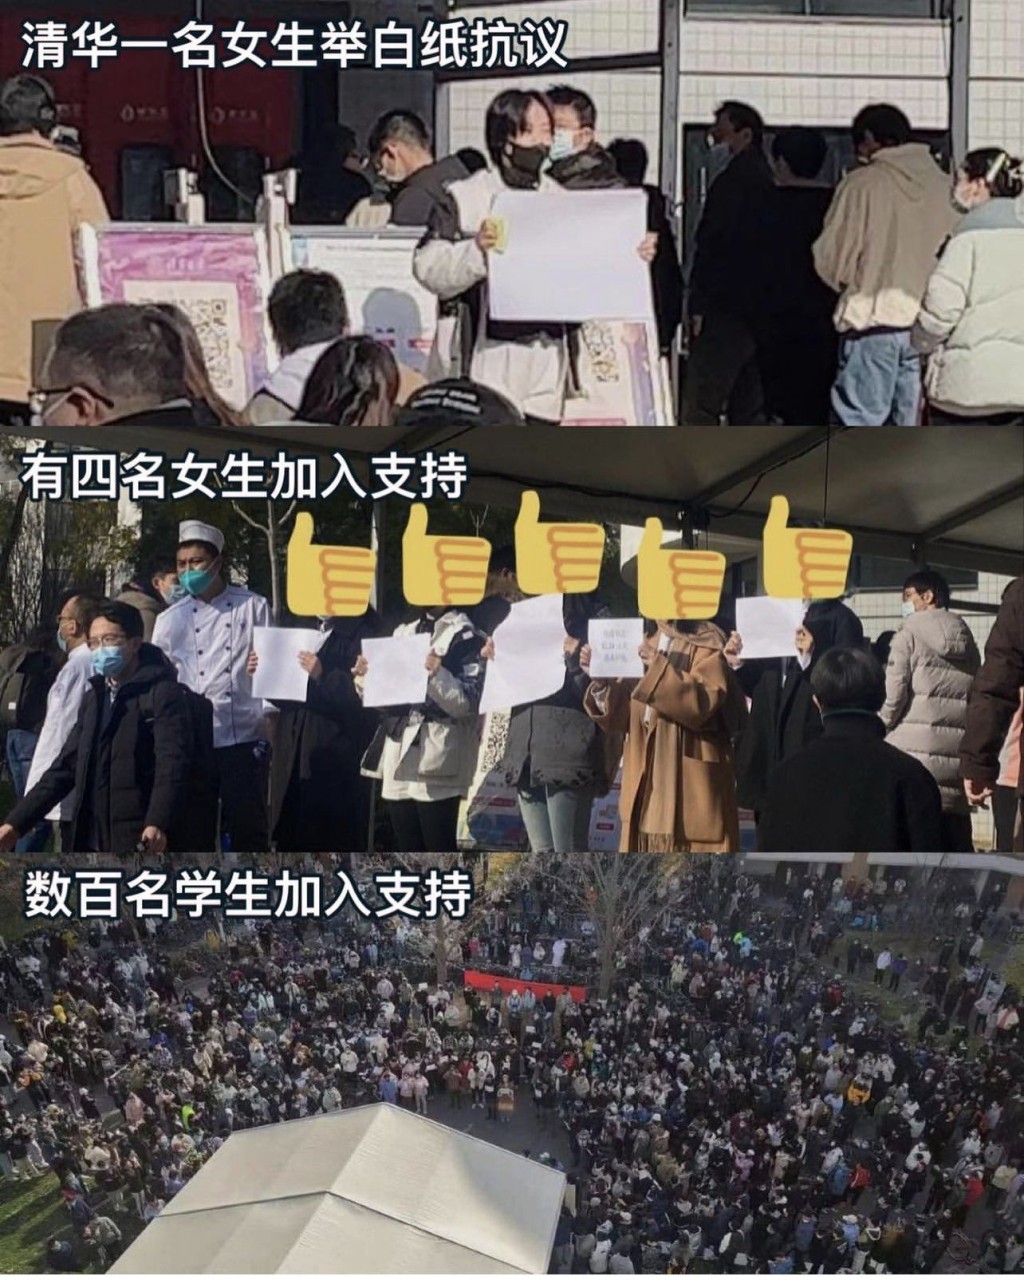 網傳北京清華等百所大學爆發白紙抗議。